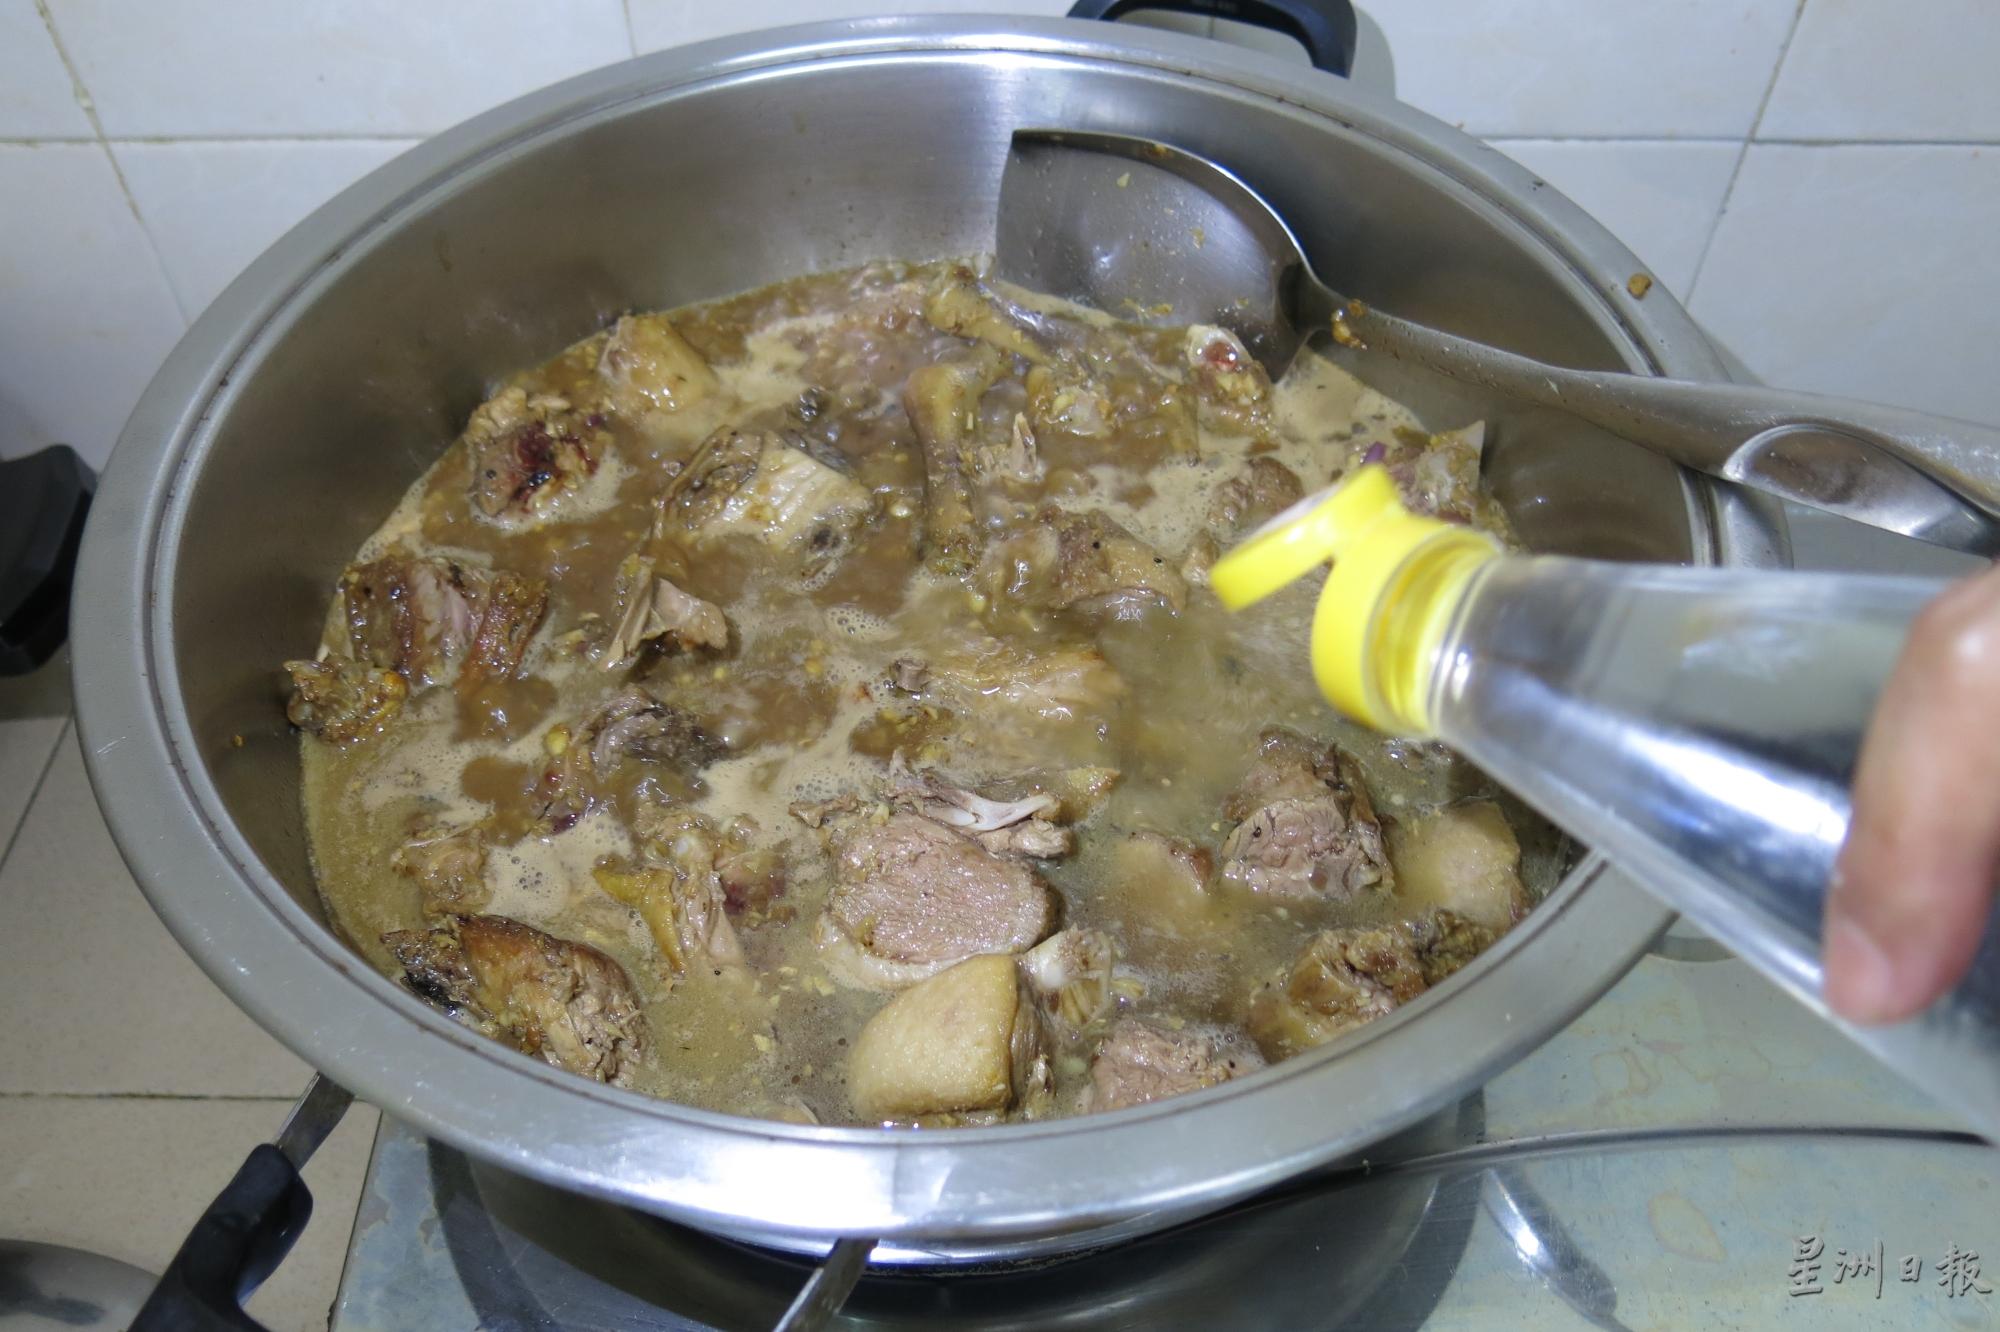 加入米醋盖上锅将鸭肉焖半小时或以上。

